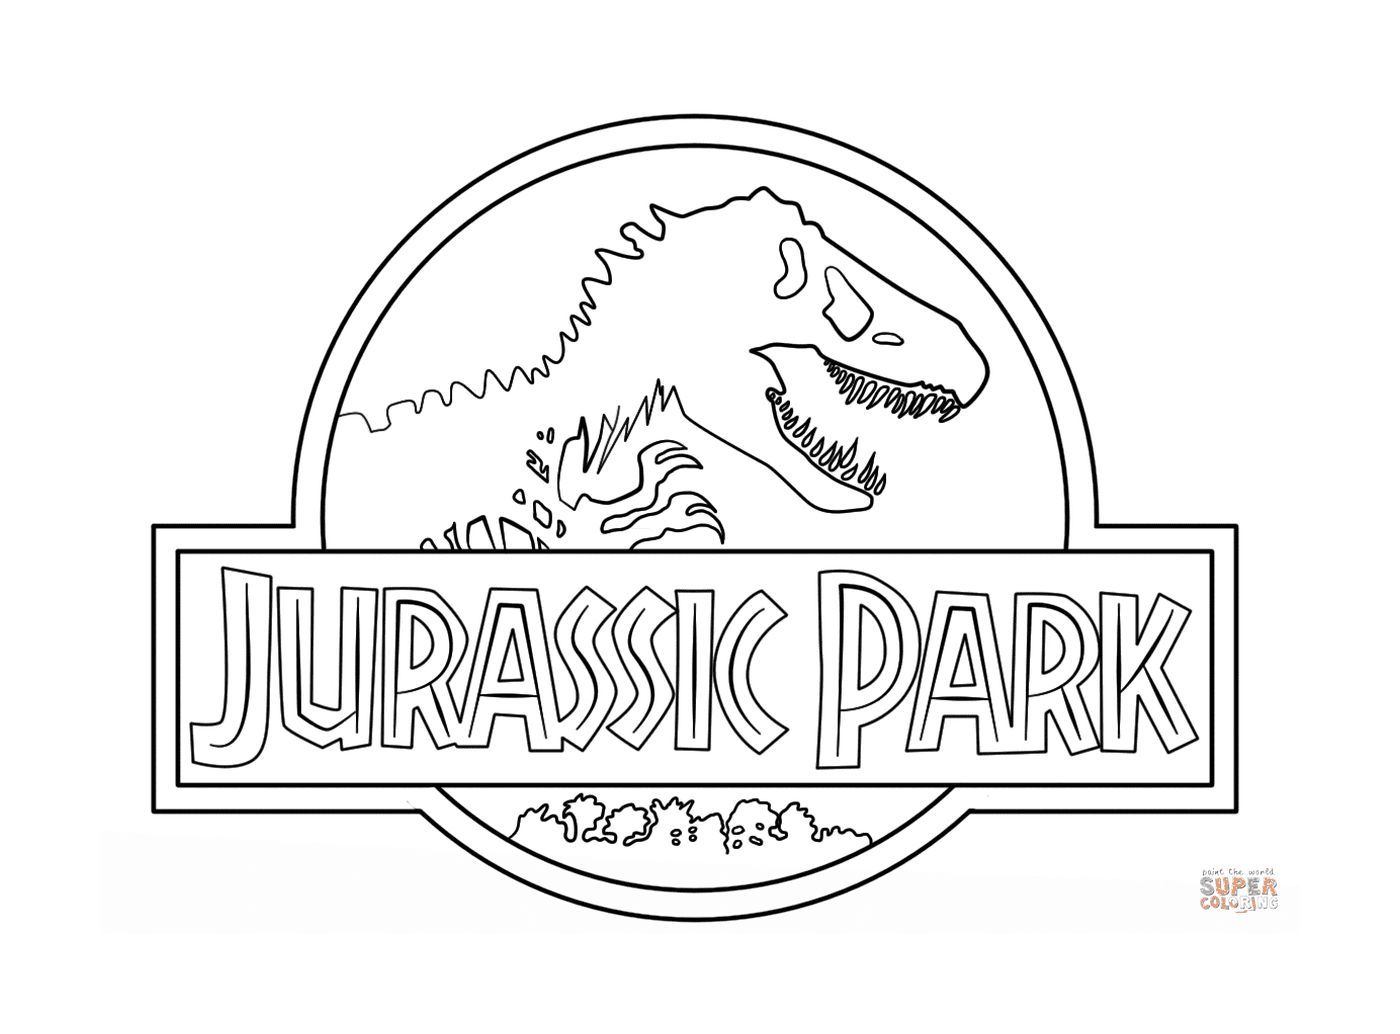  Jurassic Park, o ambiente acima de tudo 